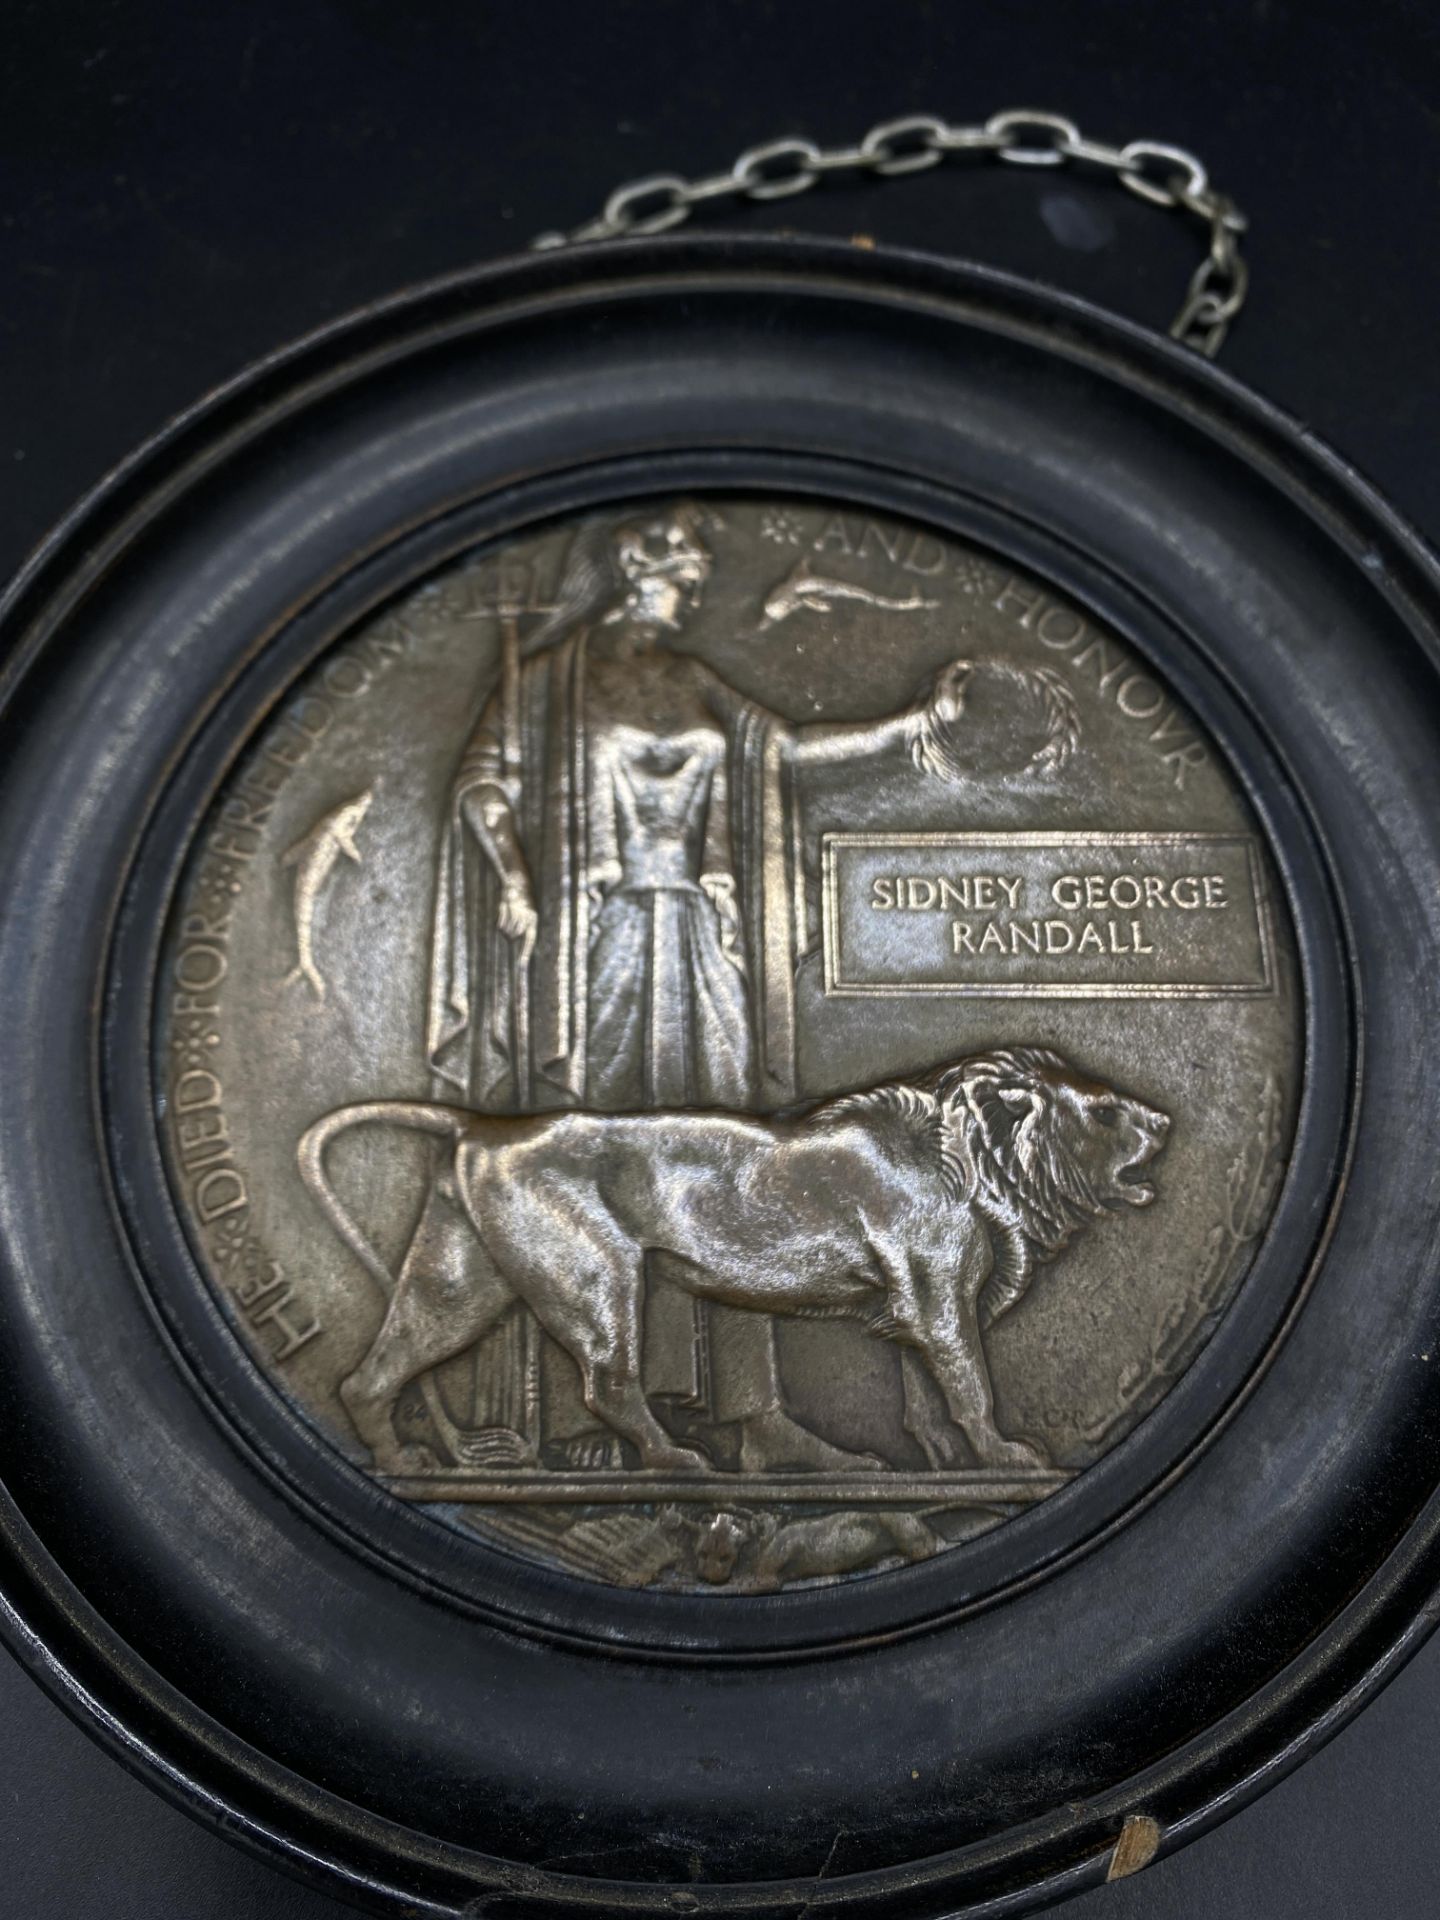 Framed World War 1 bronze death plaque - Image 2 of 3